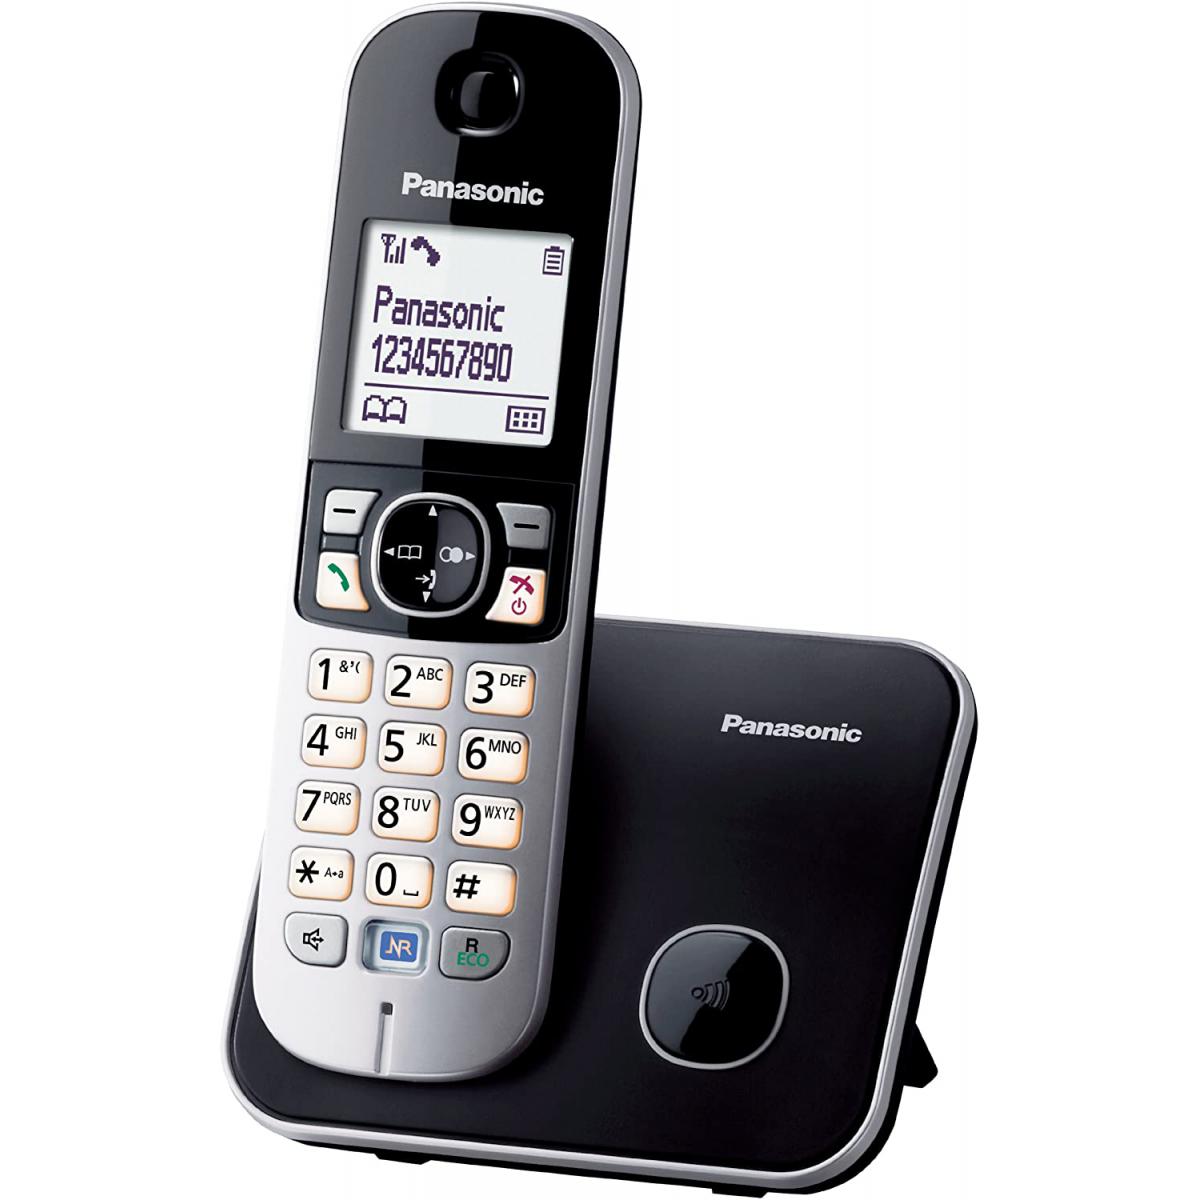 Panasonic - Rasage Electrique - telephone Sans Fil Sans Répondeur Noir gris - Téléphone fixe-répondeur